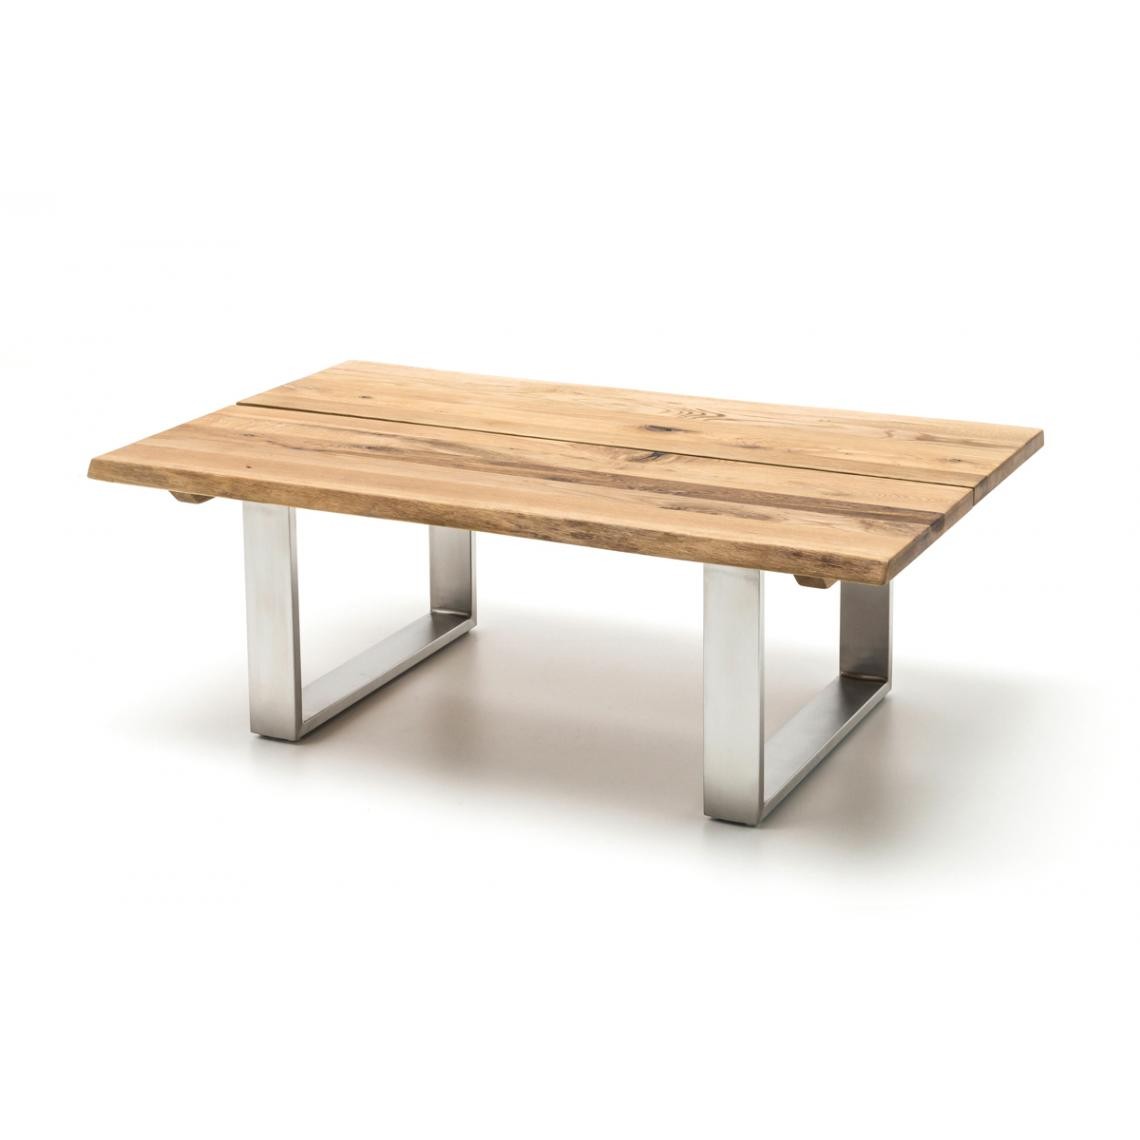 Pegane - Table basse en chêne noueux huilé cire - L120 x H43 x P75 cm - Tables basses